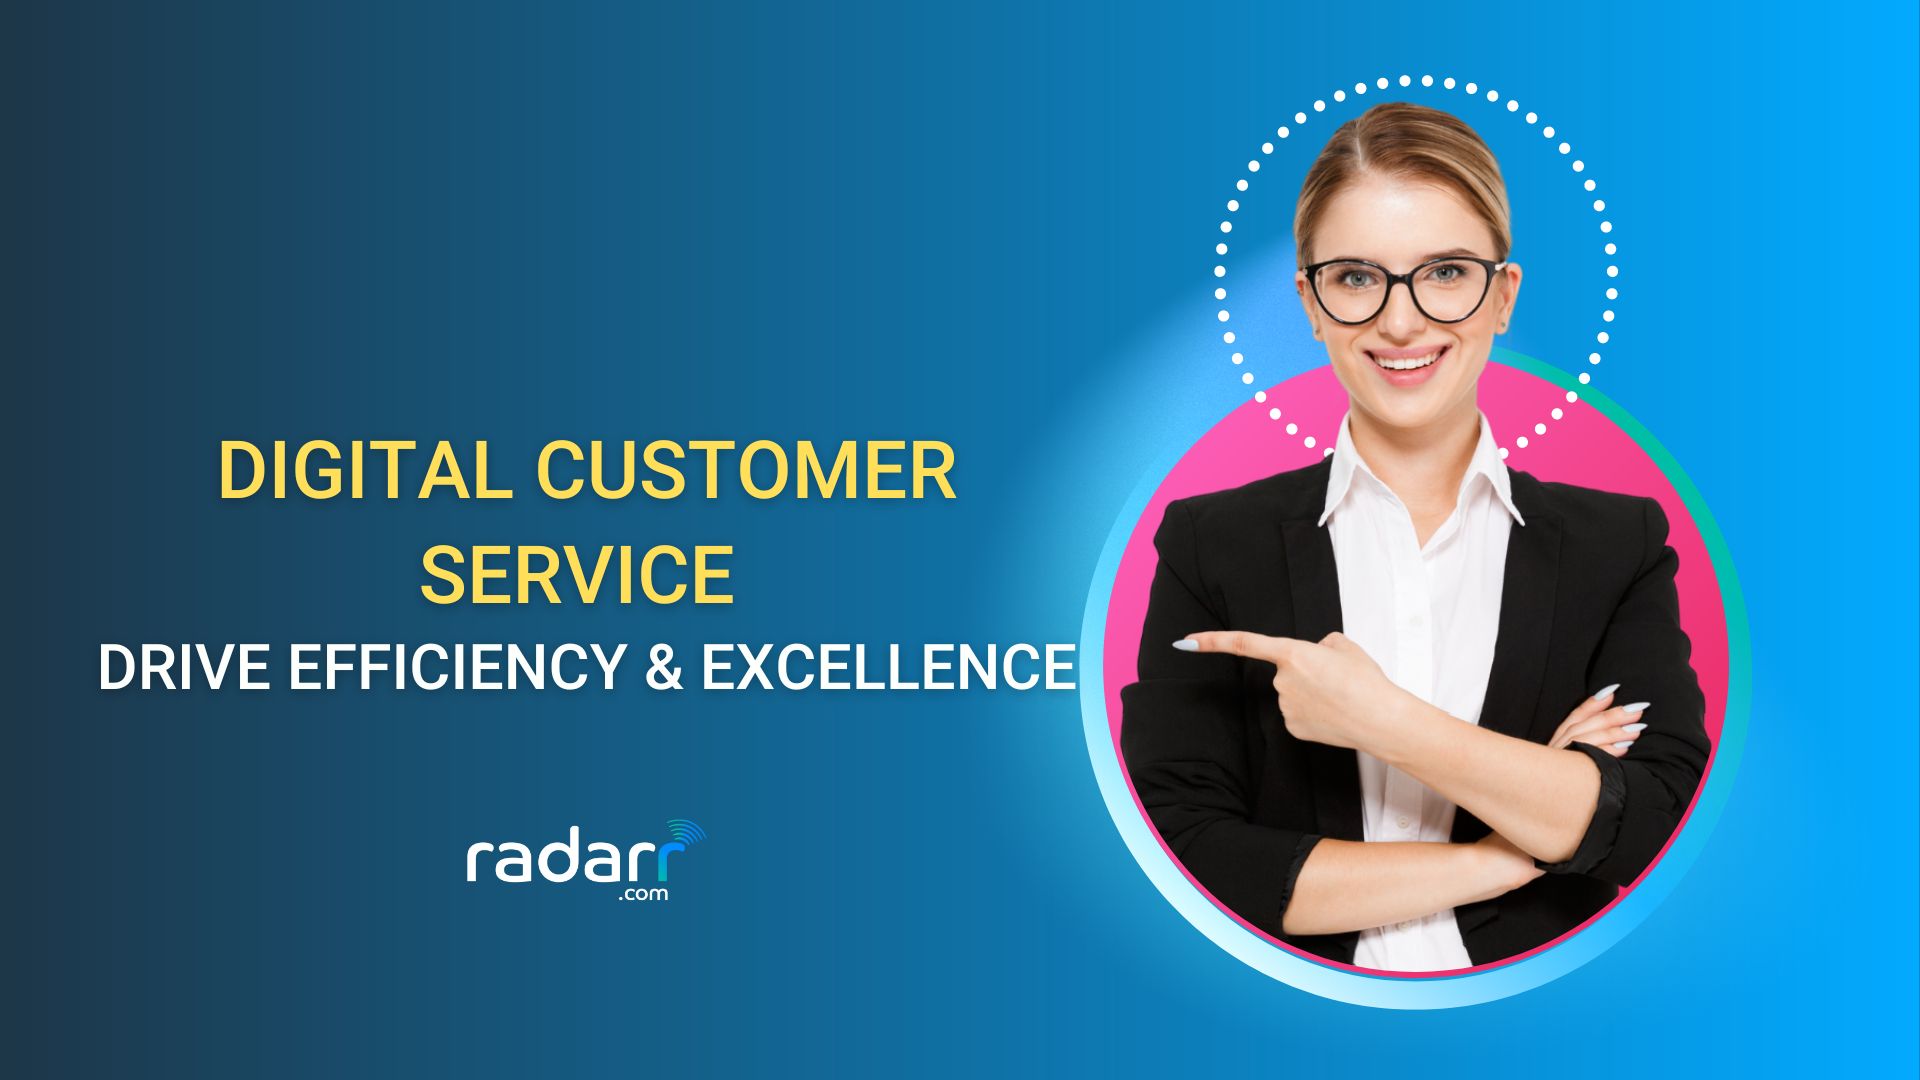 building efficiency into digital customer service